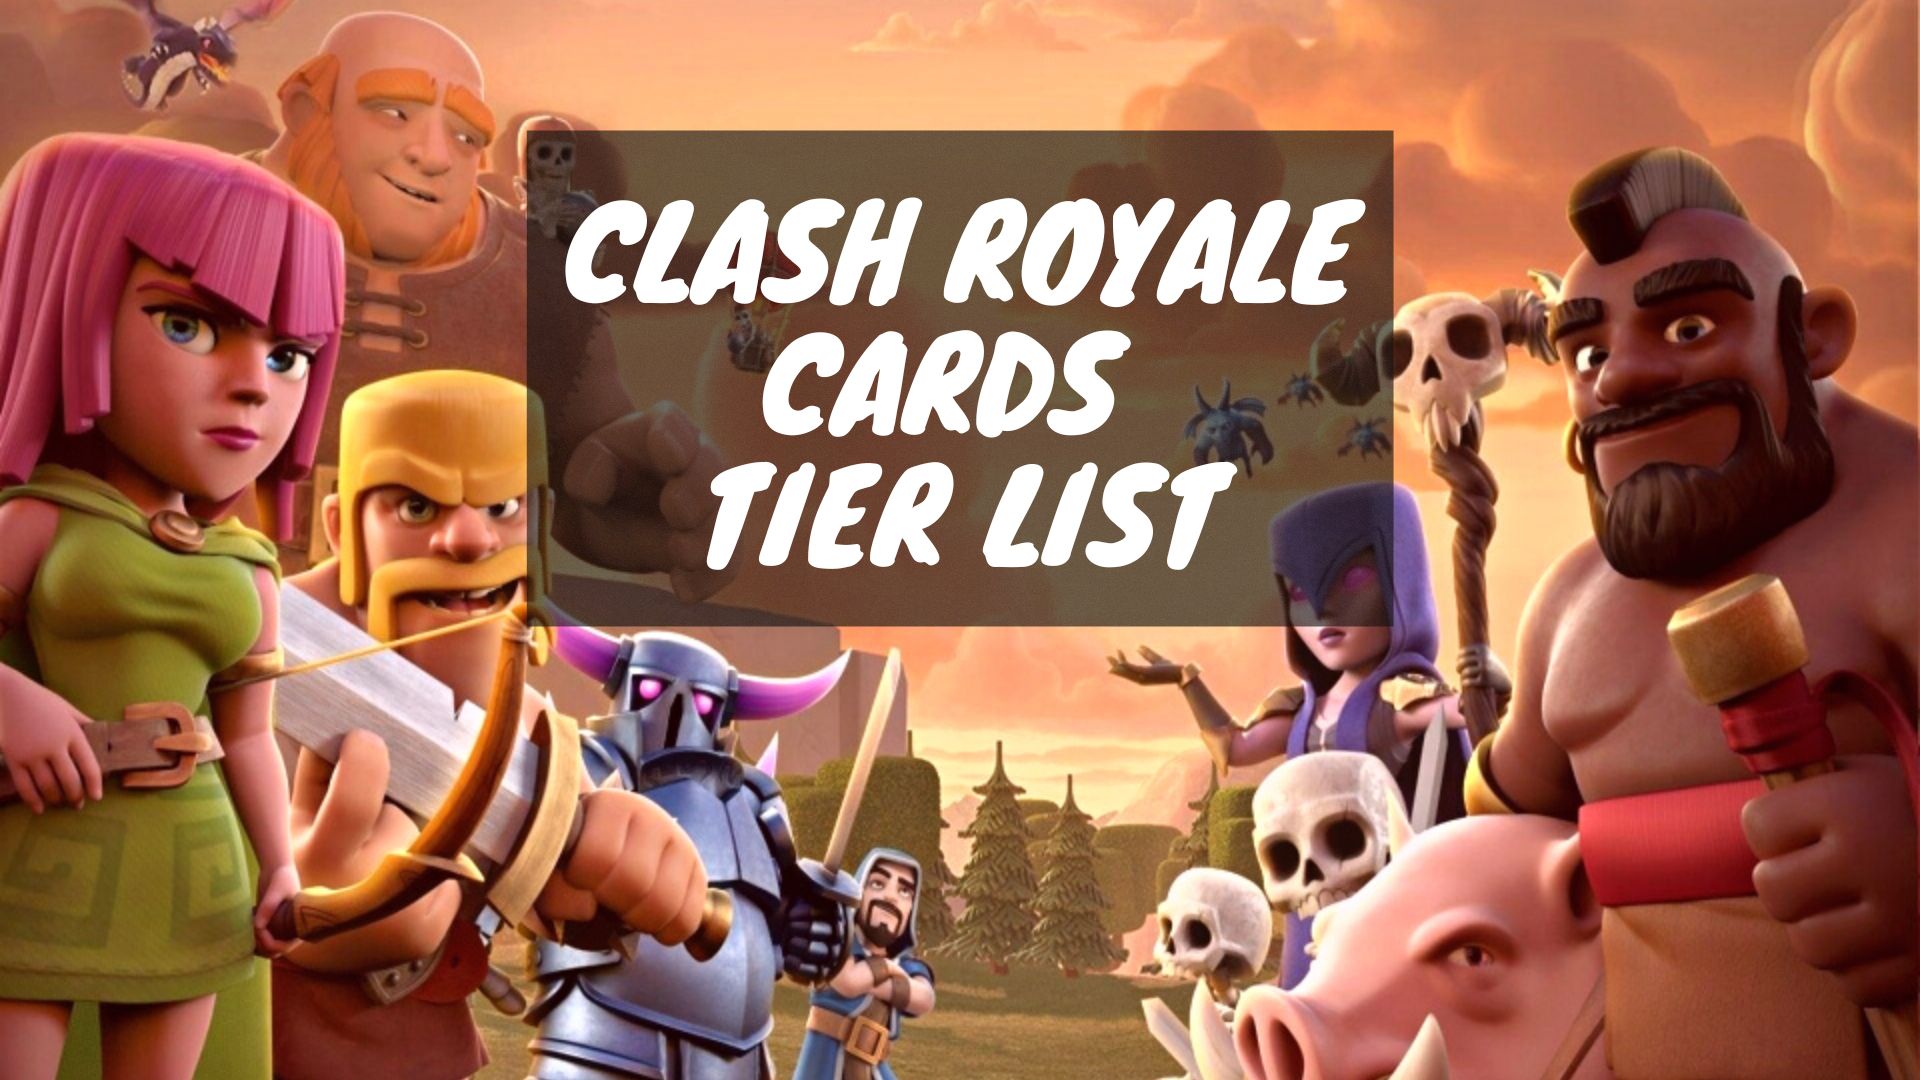 Clash royale tier list (cards) 